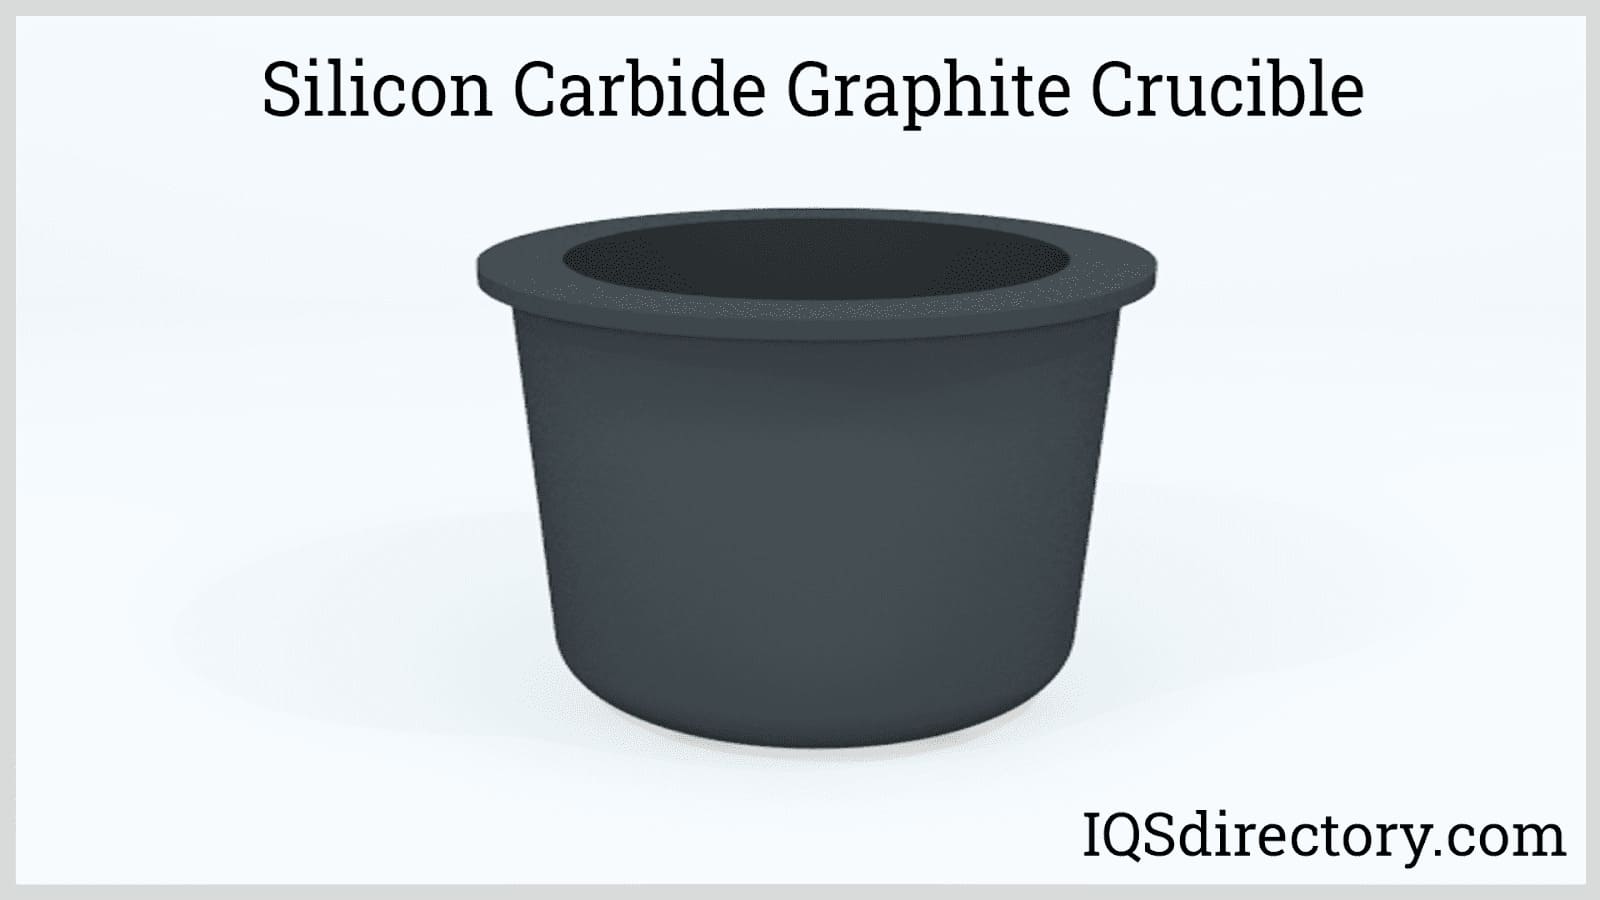 Silicon Carbide Graphite Crucible